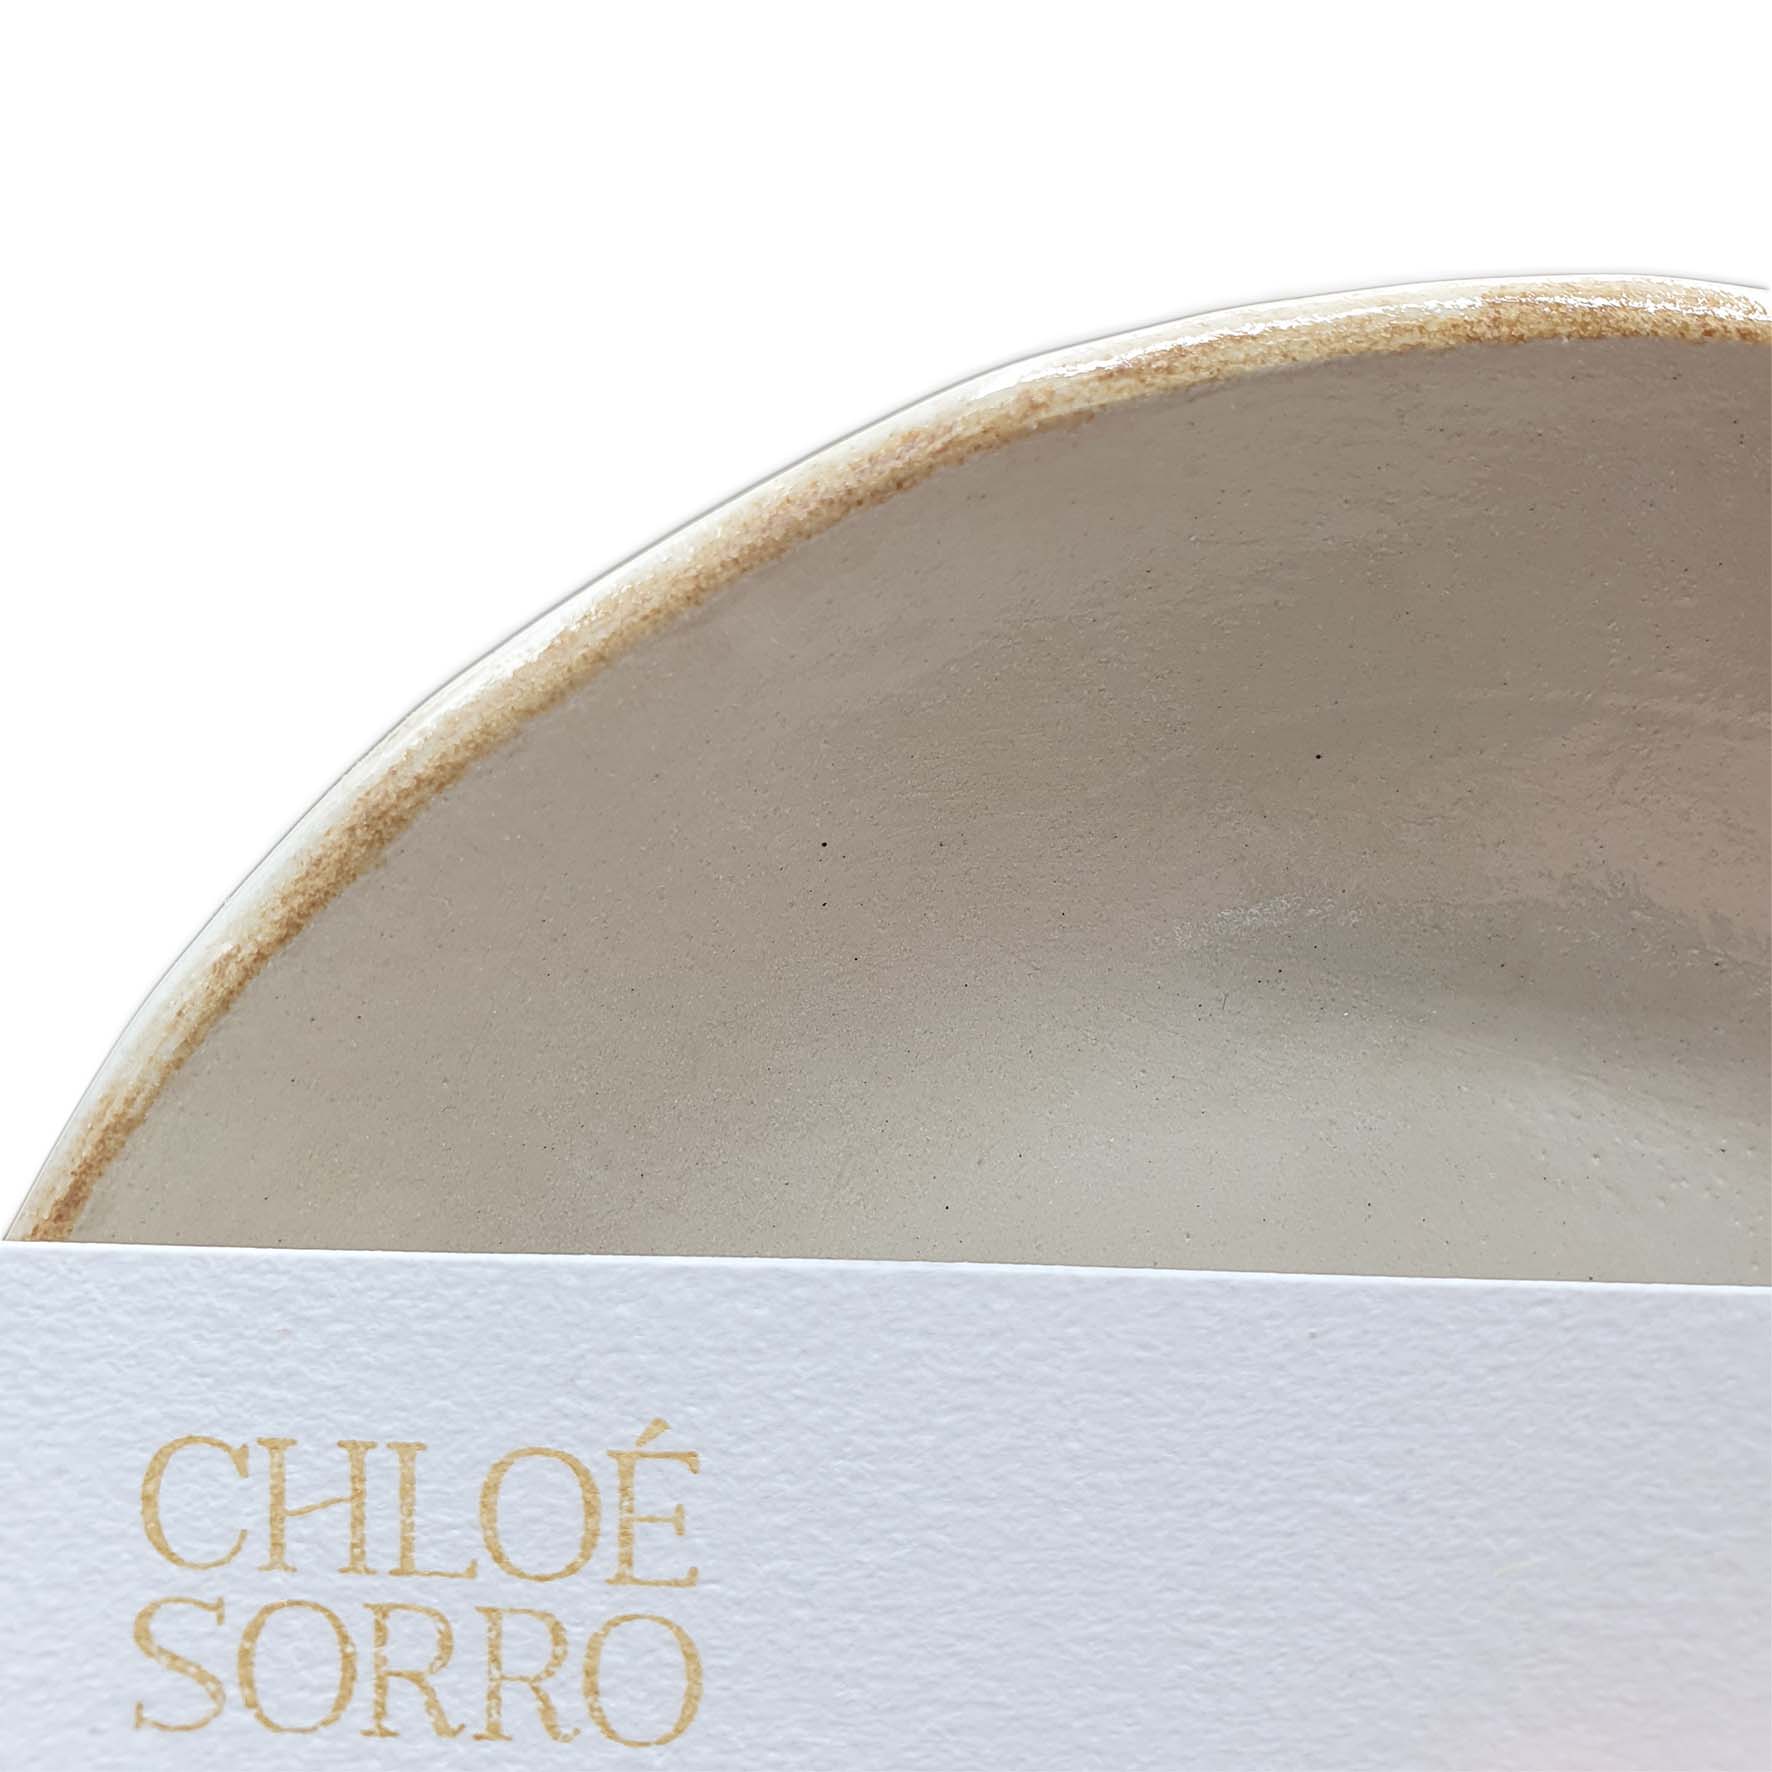 Chloé Sorro céramique - Ethicorse.fr - Assiette détail carte de visite